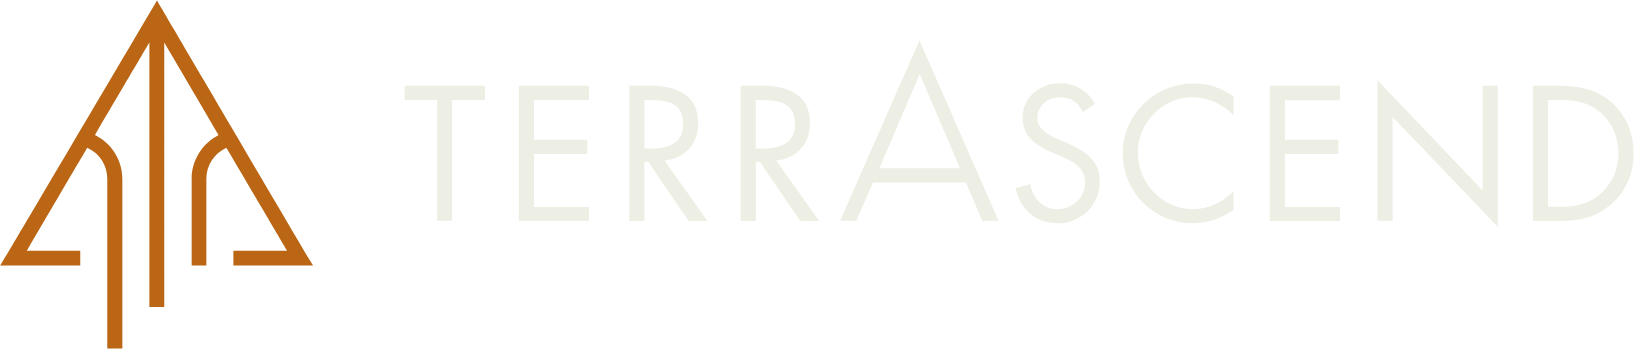 TerrAscend logo grand pour les fonds sombres (PNG transparent)